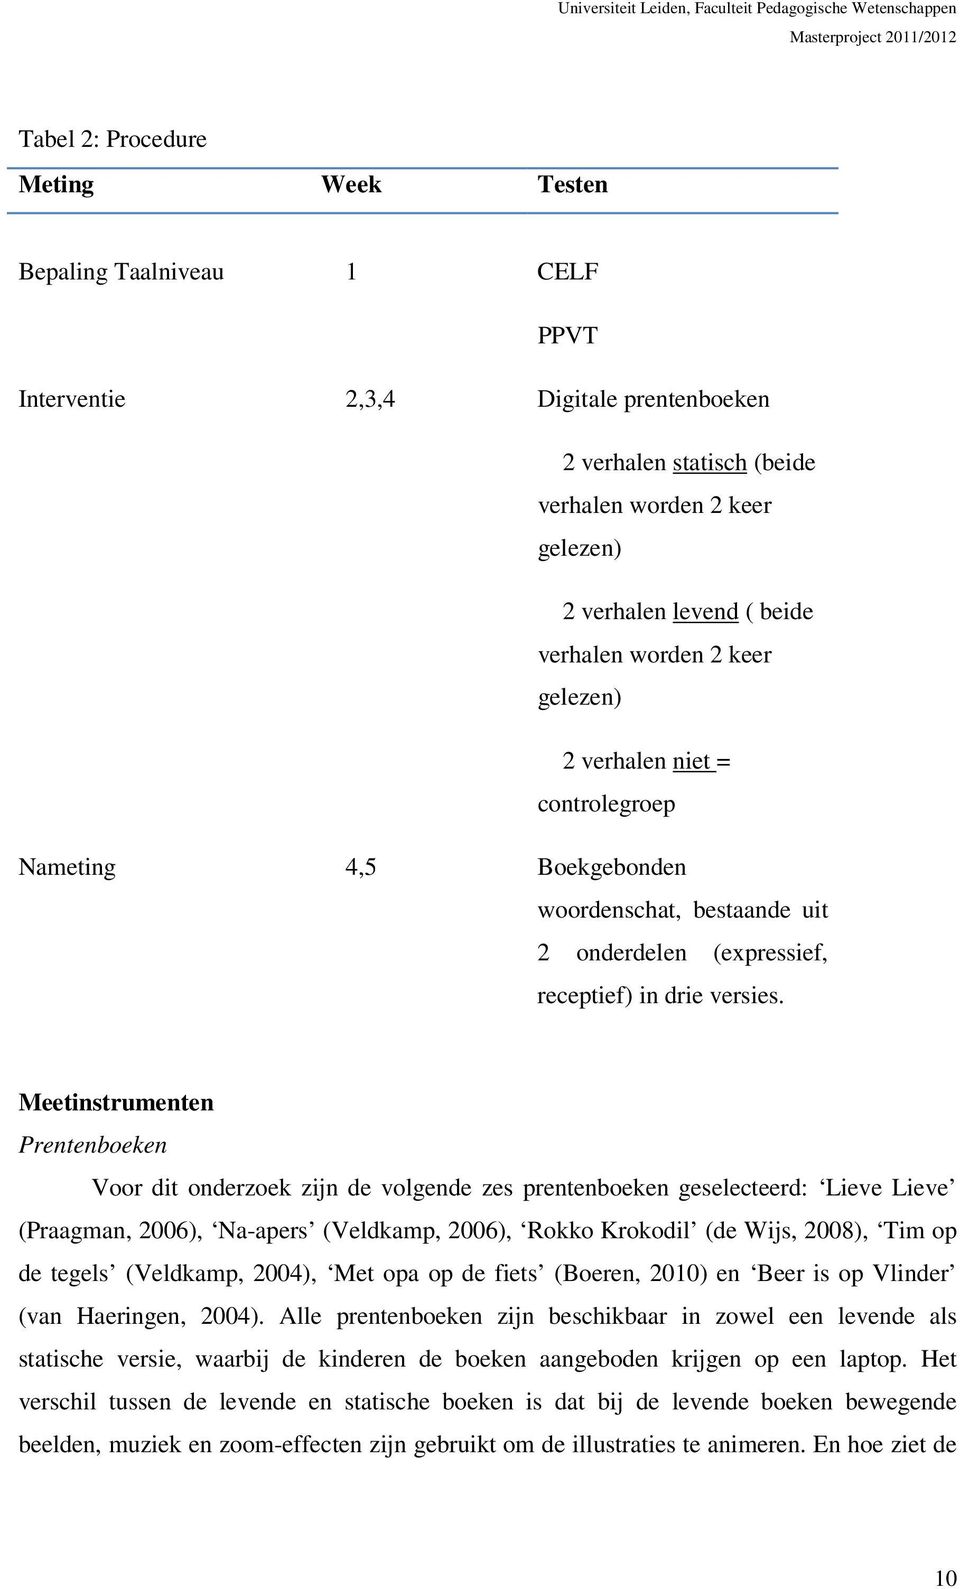 Meetinstrumenten Prentenboeken Voor dit onderzoek zijn de volgende zes prentenboeken geselecteerd: Lieve Lieve (Praagman, 2006), Na-apers (Veldkamp, 2006), Rokko Krokodil (de Wijs, 2008), Tim op de